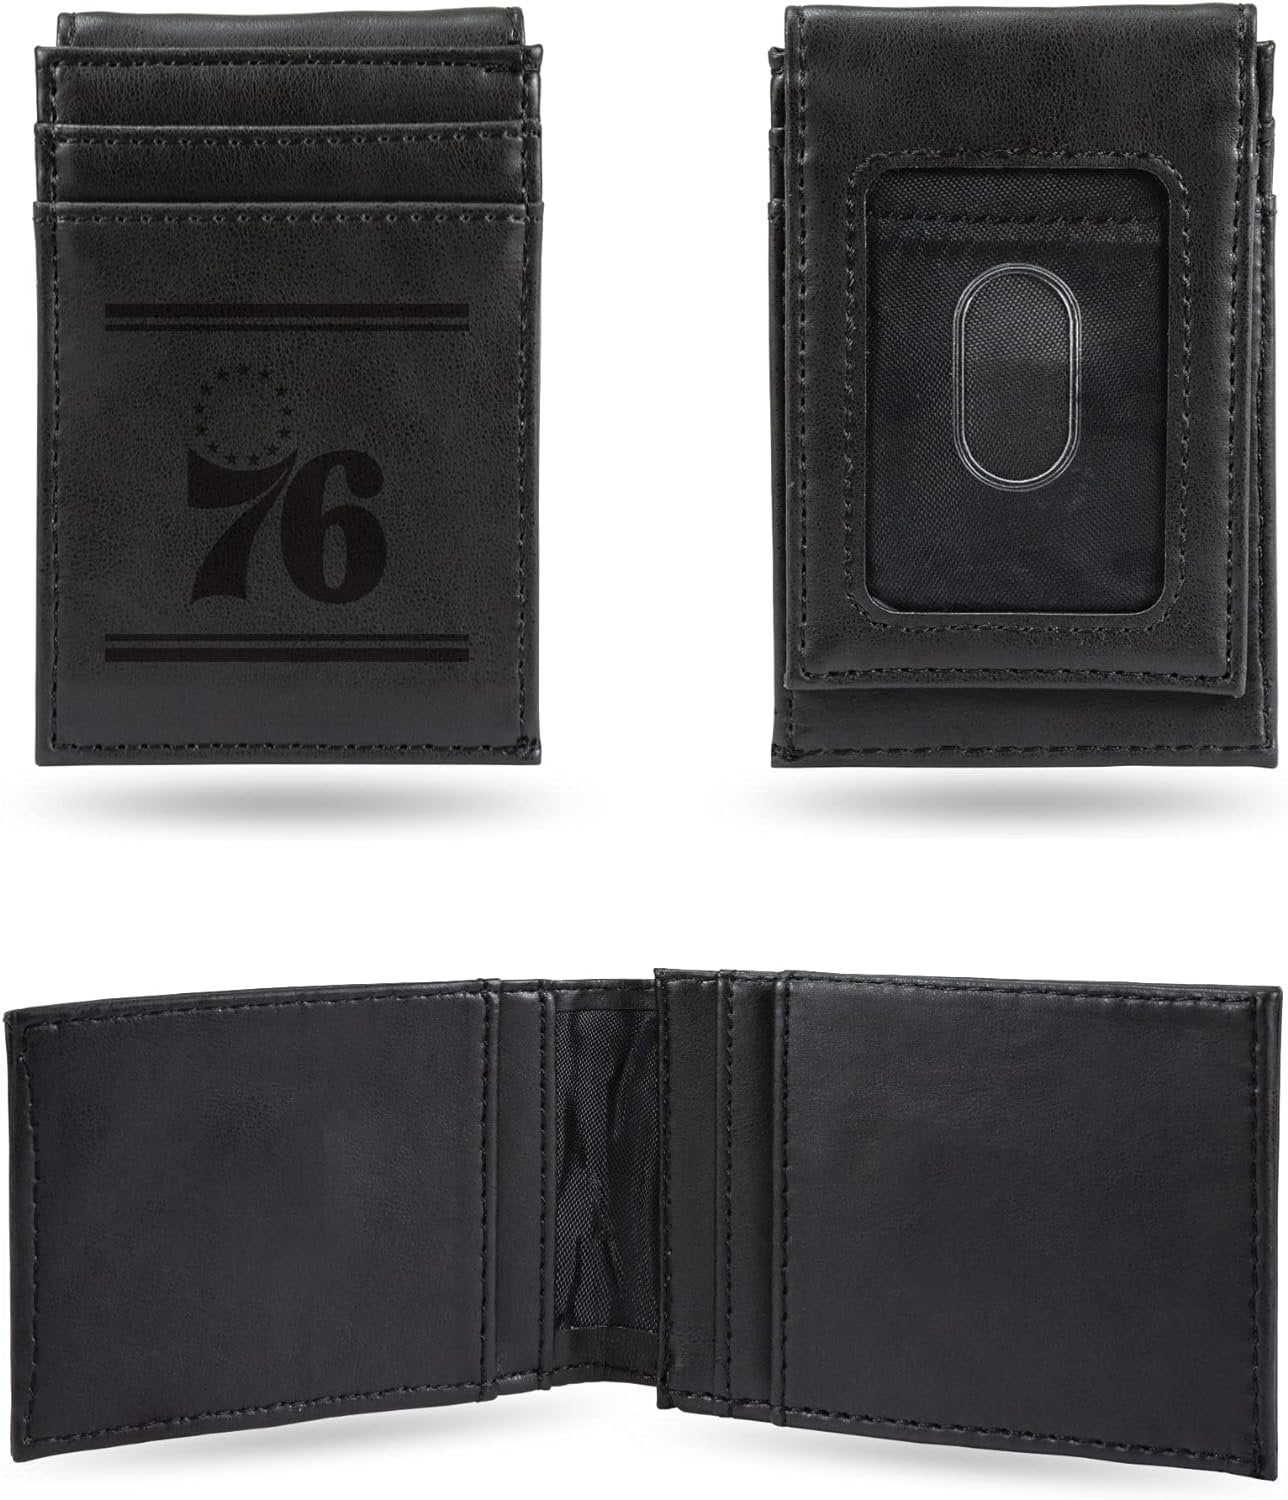 Philadelphia 76ers Premium Black Leather Wallet, Front Pocket Magnetic Money Clip, Laser Engraved, Vegan